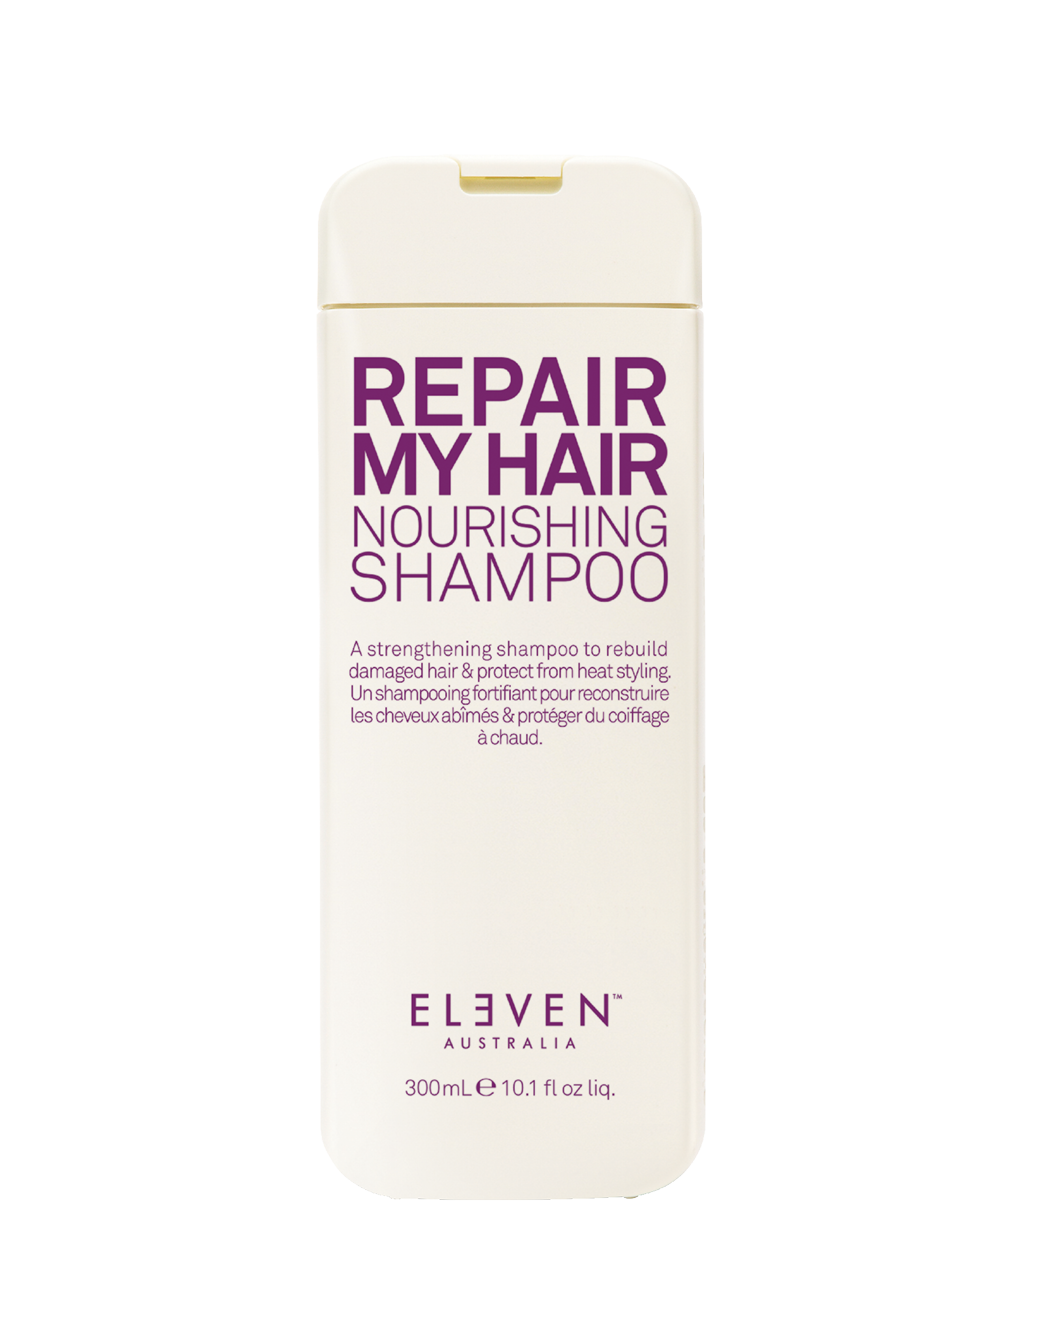 Repair My Hair Nourishing Shampoo 300ml